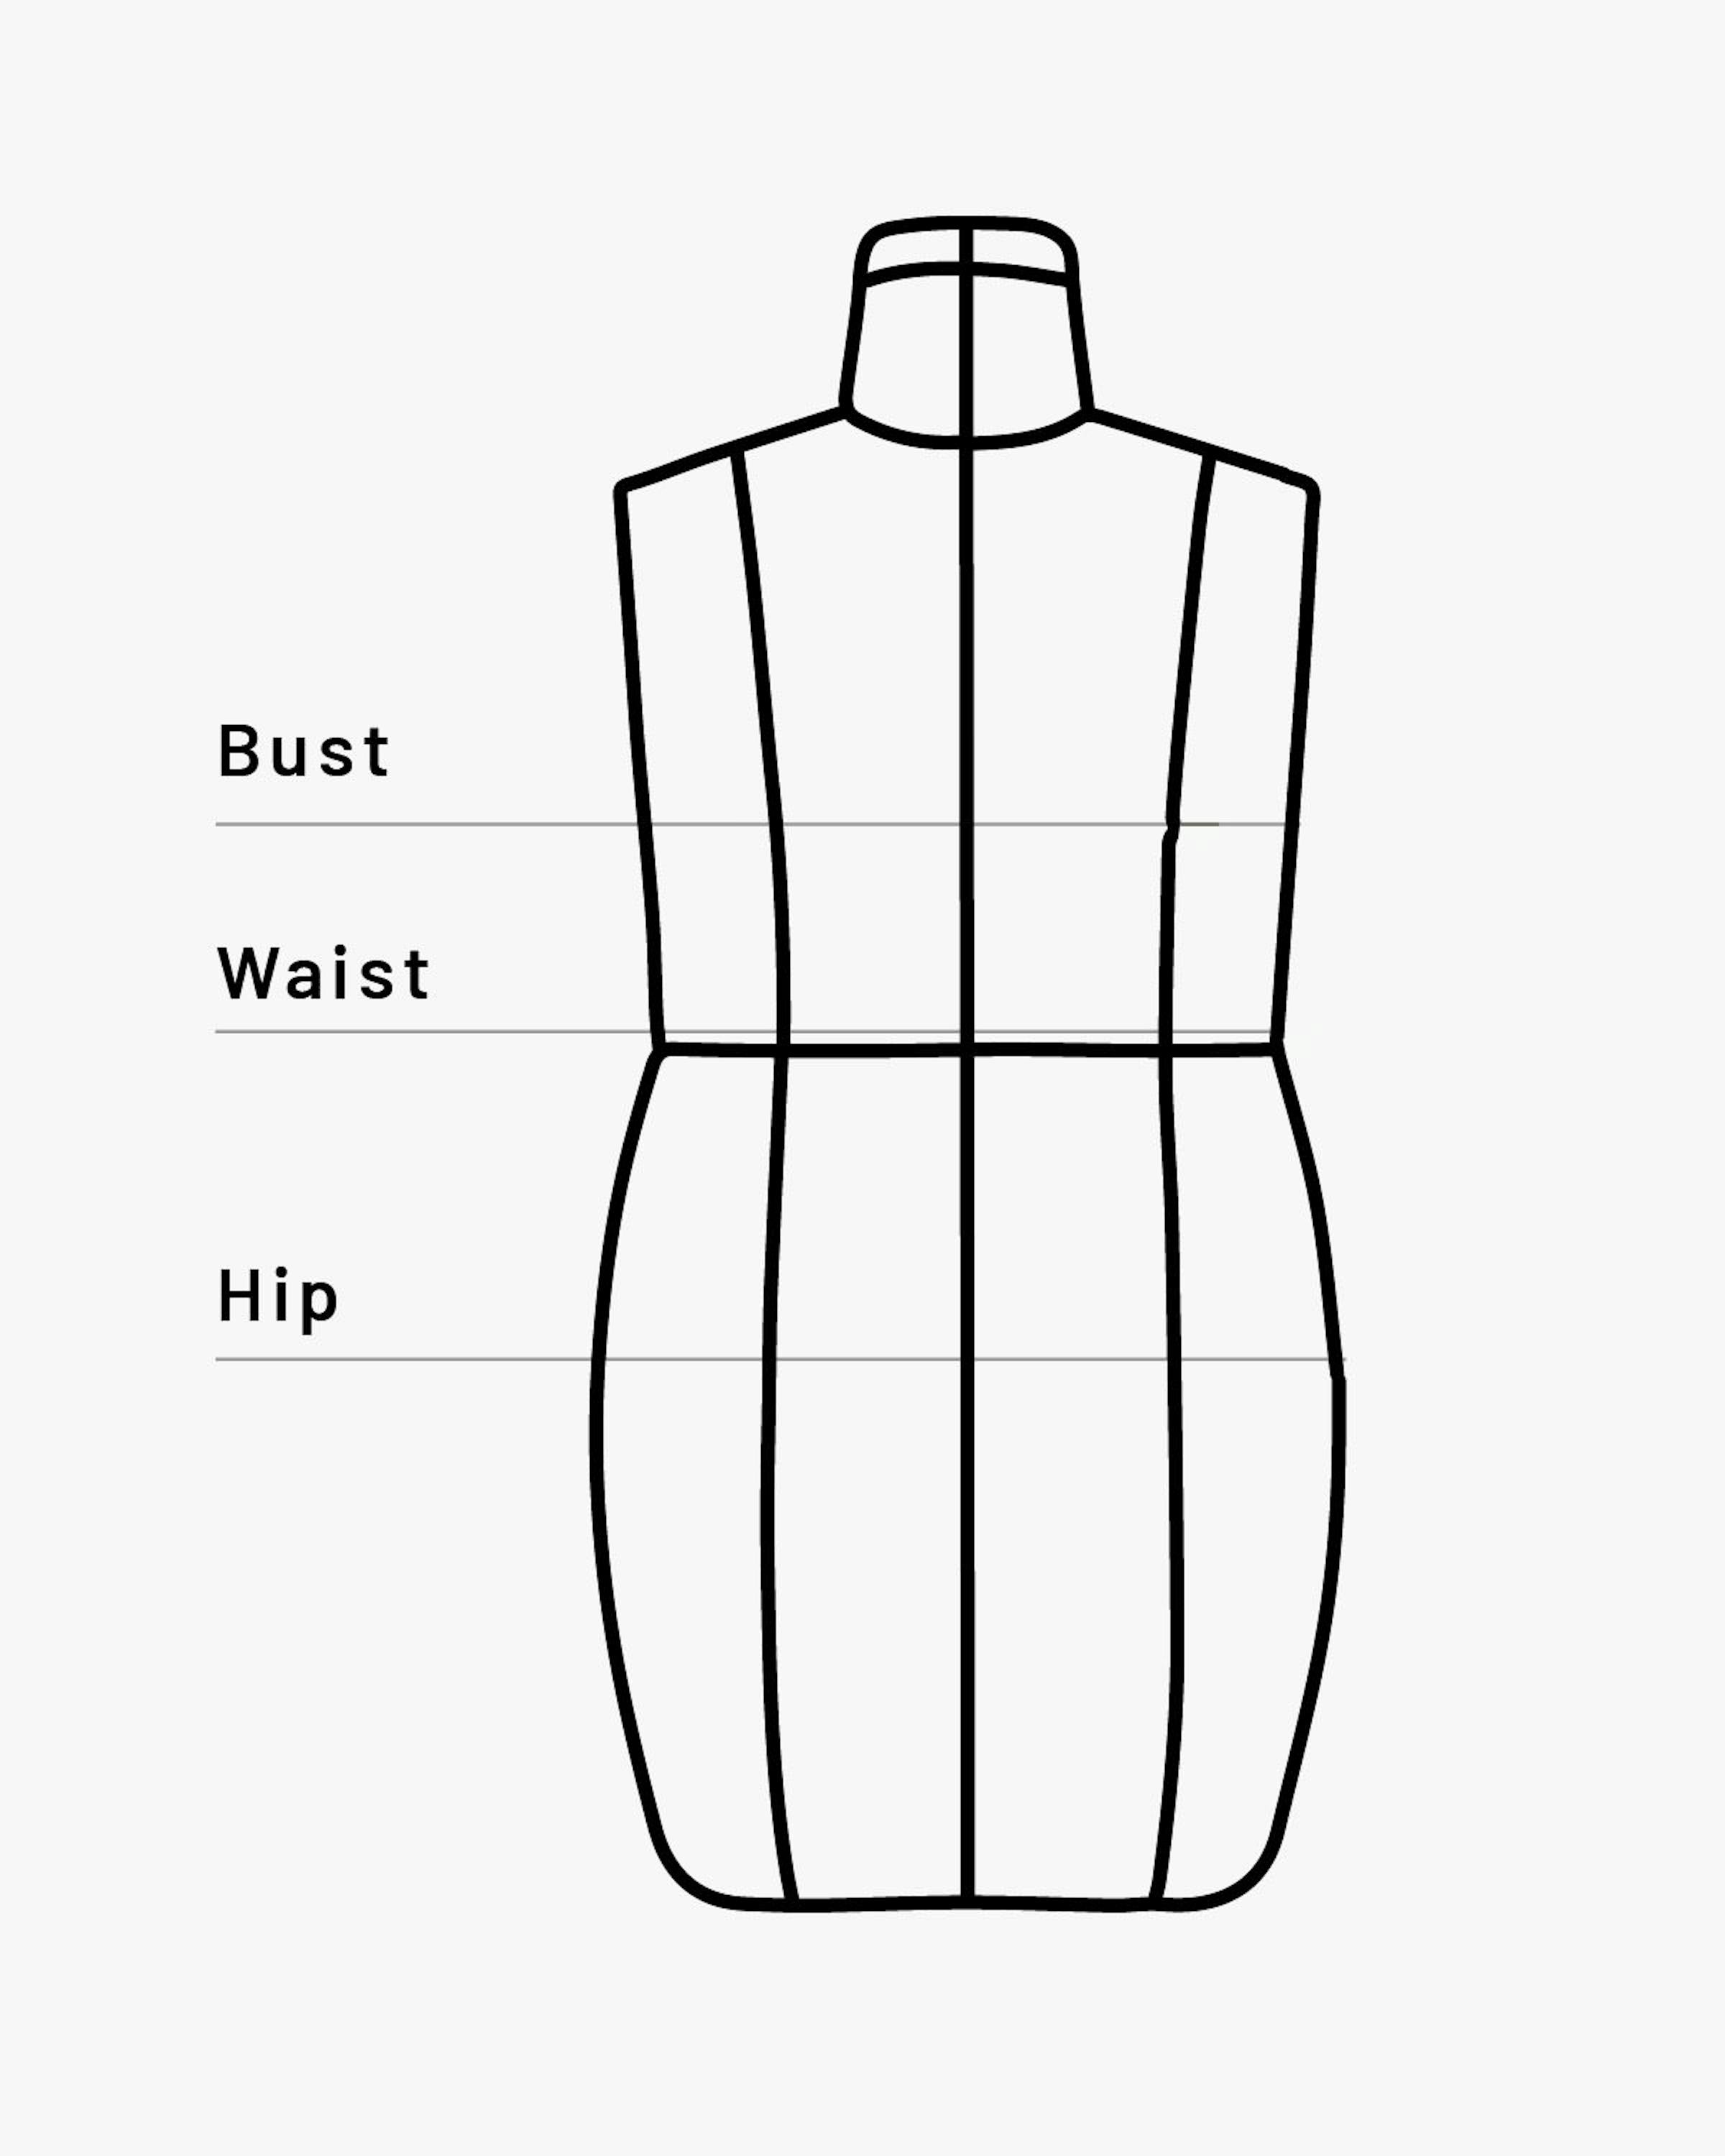 رسم توضيحي لشكل فستان مع إبراز مناطق المقاسات